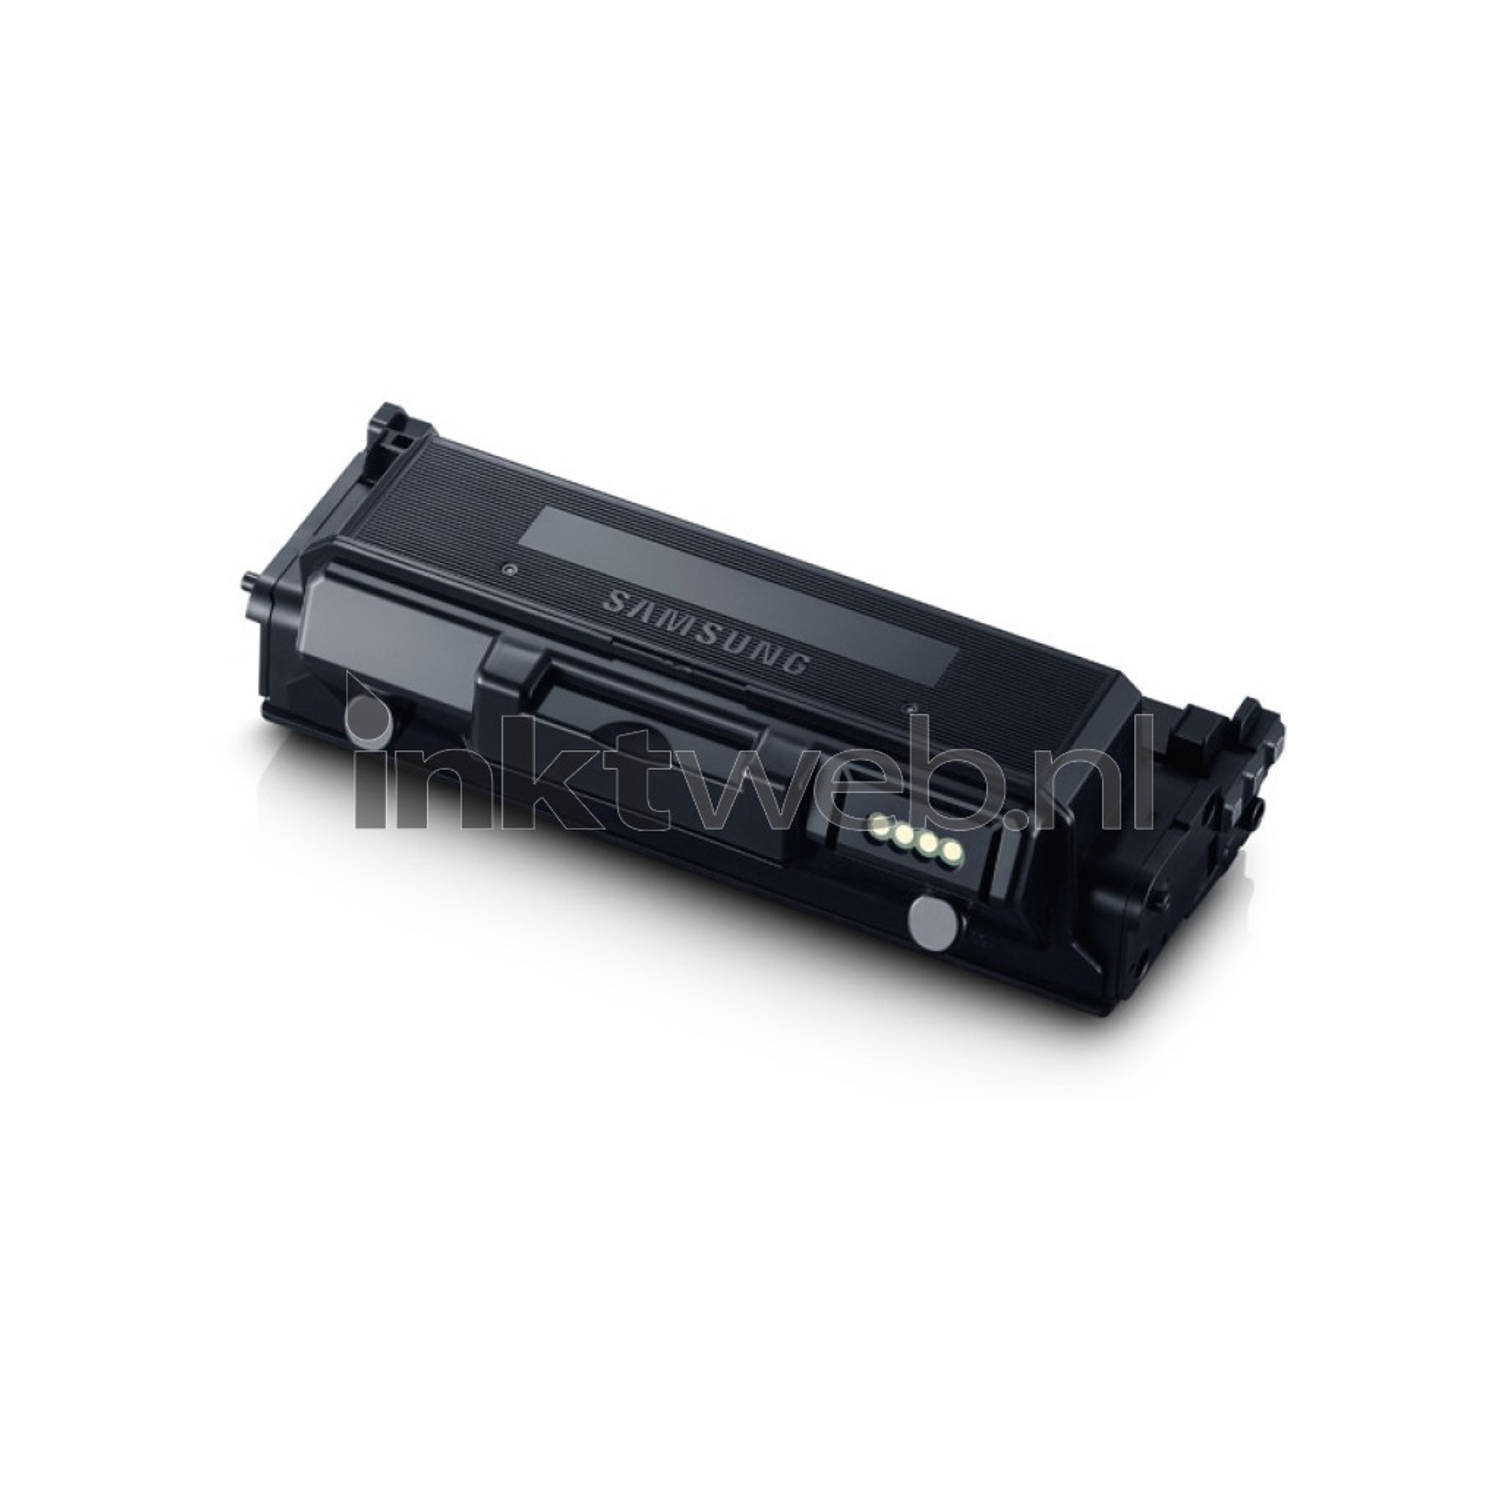 HP/Samsung MLT-D 204 U toner zwart ultra high capacity